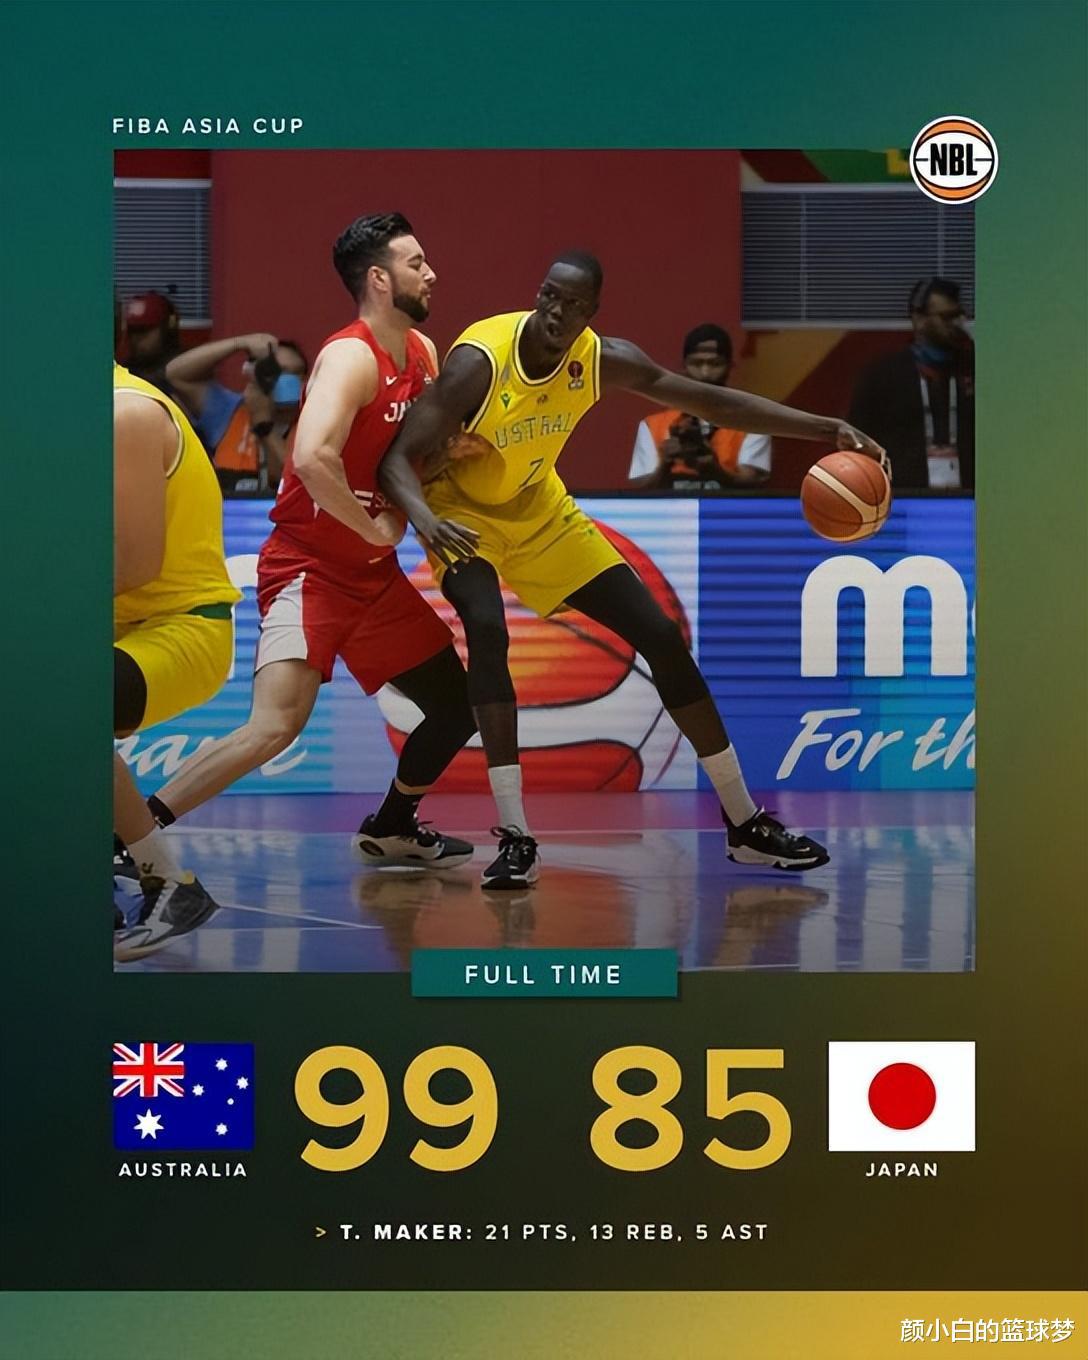 25 phút điên rồ 33+8 ba điểm! Kurry ở Nhật Bản, Đội bóng rổ nam cao của Úc đổi mới cao cấp 6, không có nơi nào để thư giãn (1)